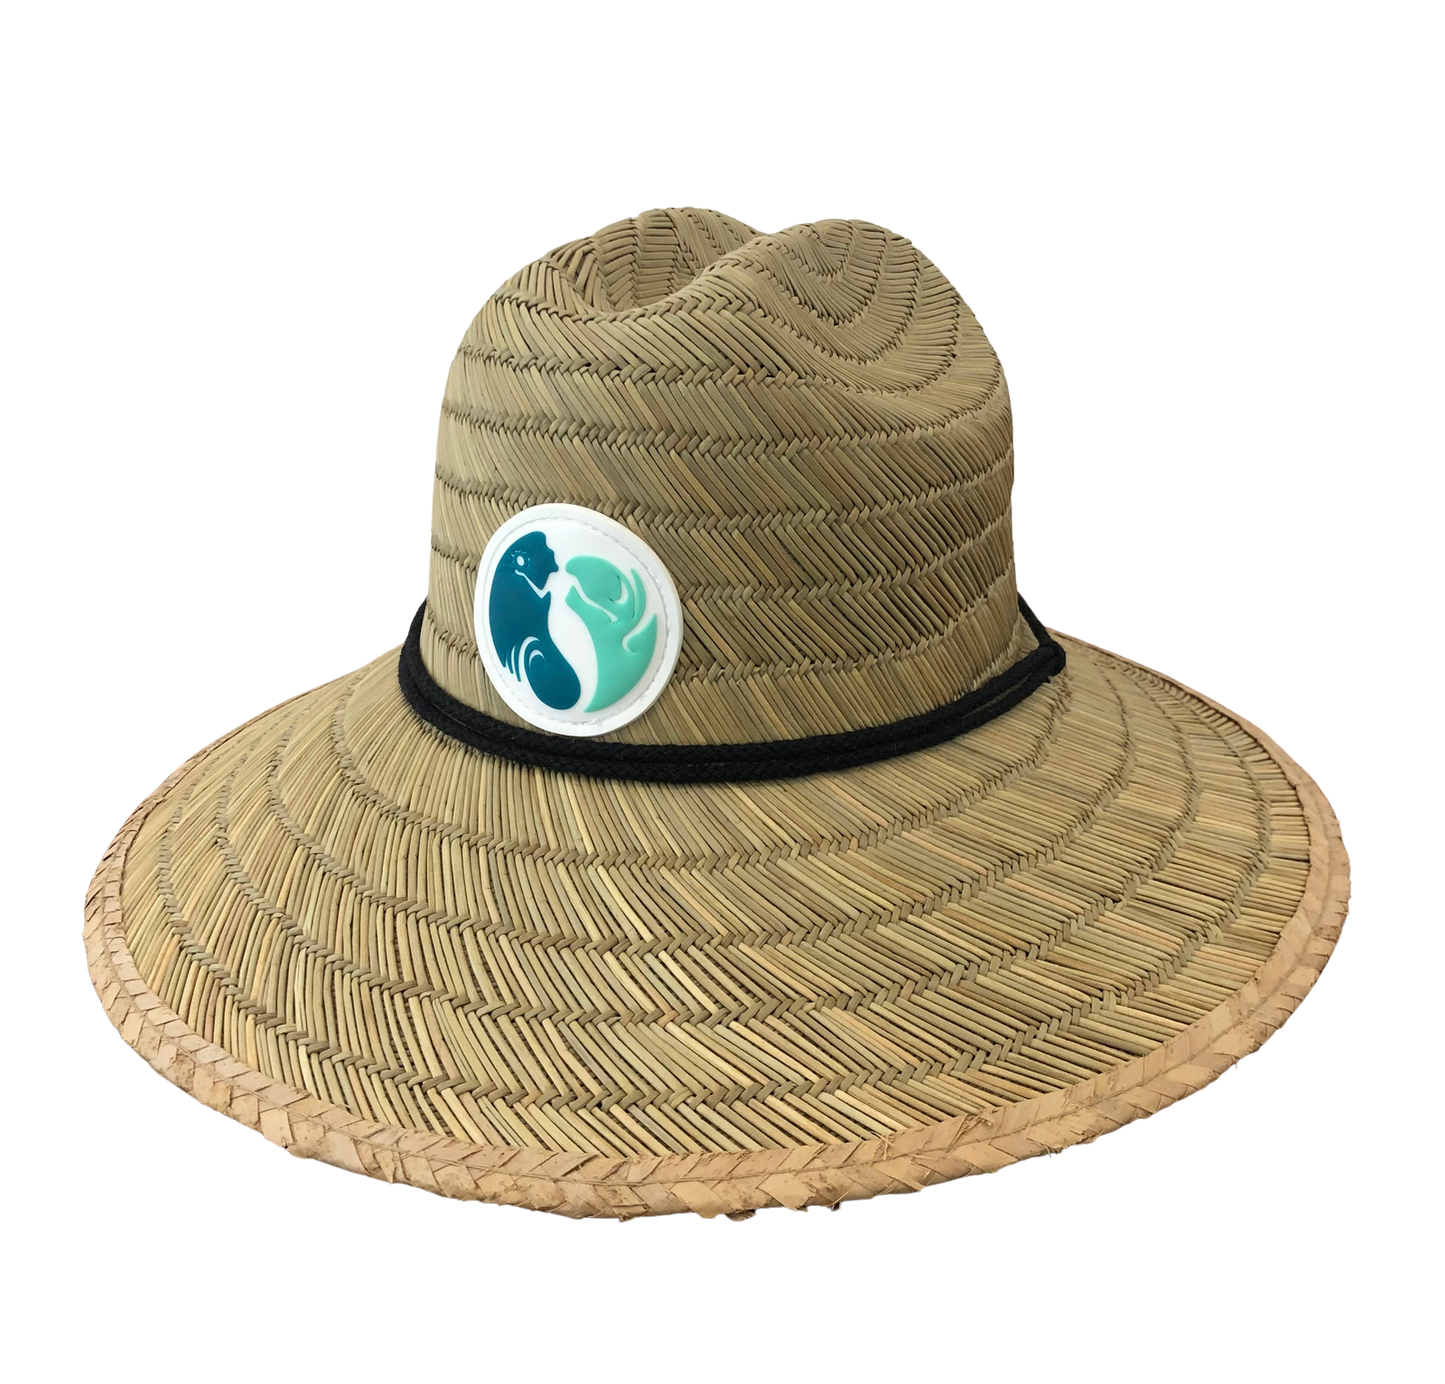 SSR Gold Coast Lifeguard Hat